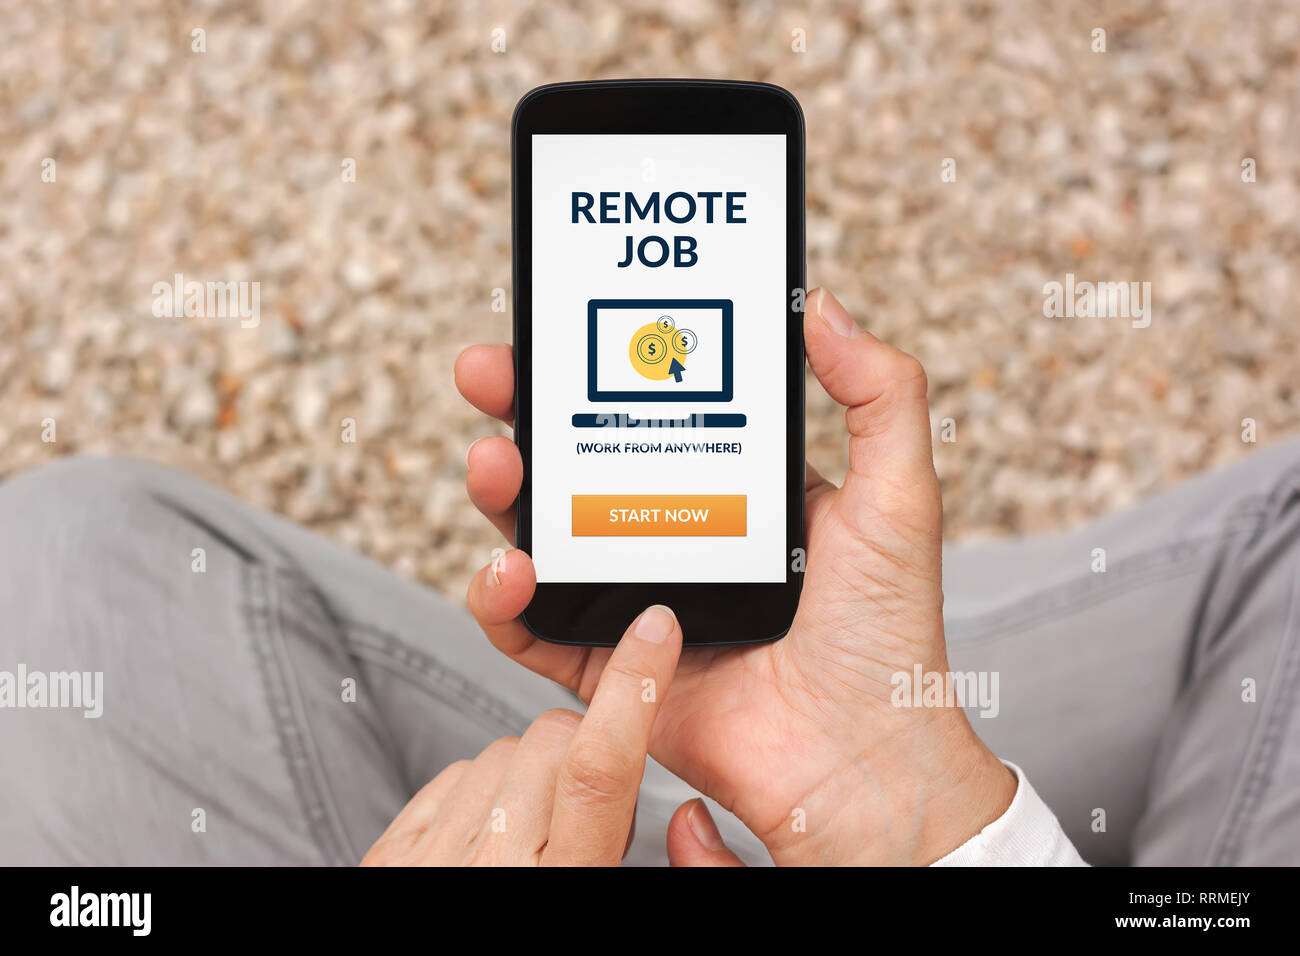 Hands holding smart phone avec remote job concept à l'écran. Tous les contenu de l'écran est conçu par moi. Mise à plat Banque D'Images